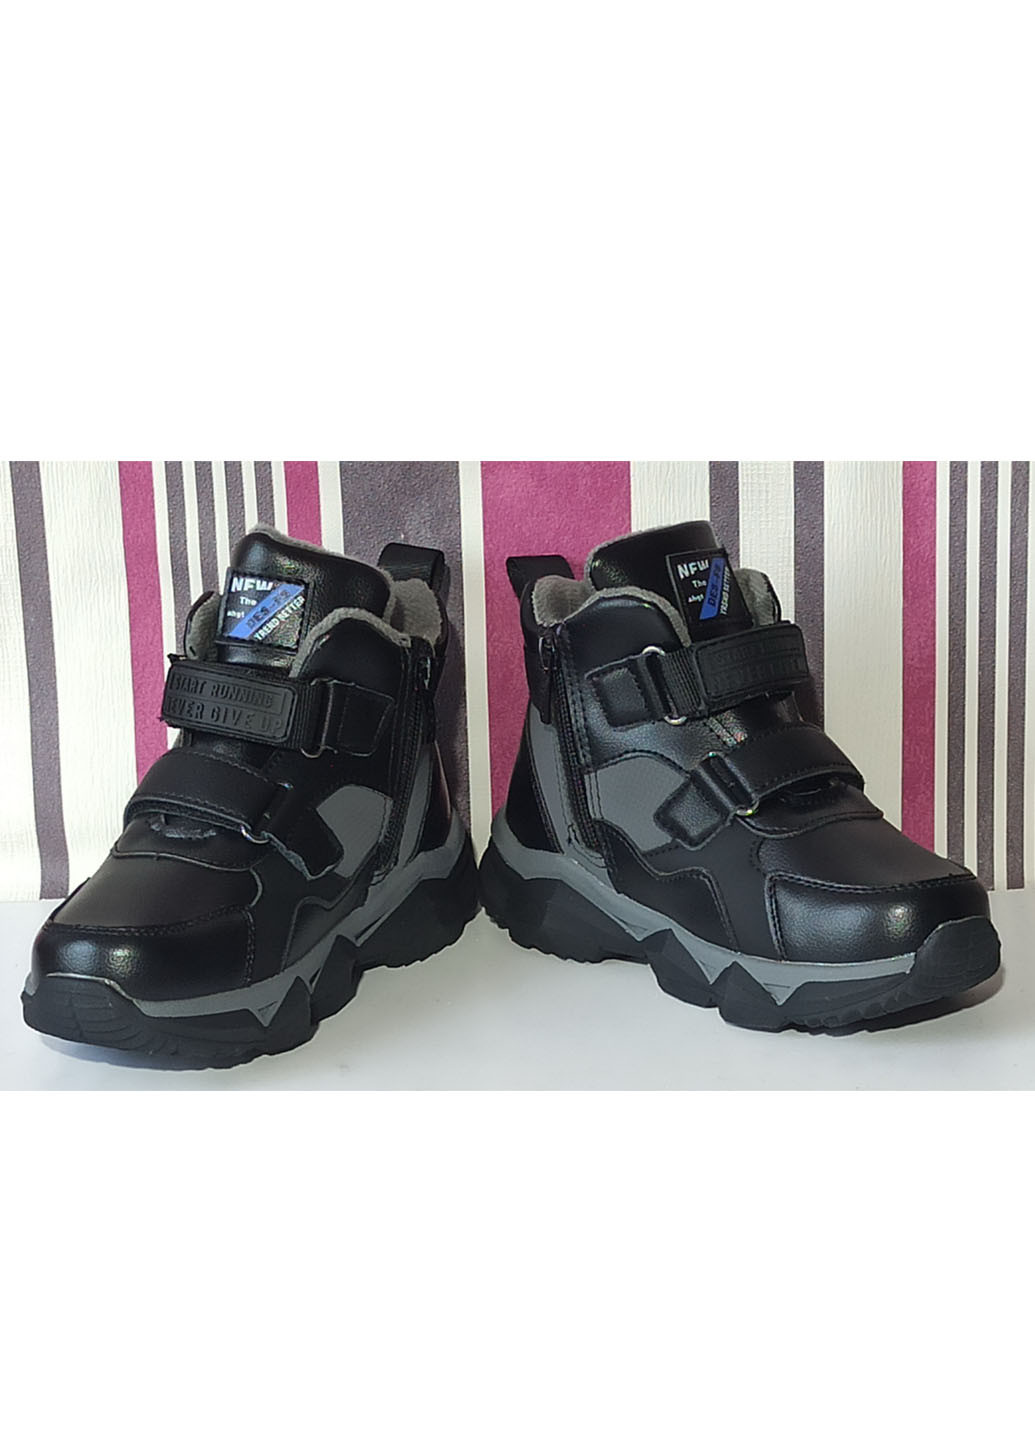 Черные повседневные осенние детские демисезонные ботинки для мальчика утепленные на флисе 66272вк черные Weestep